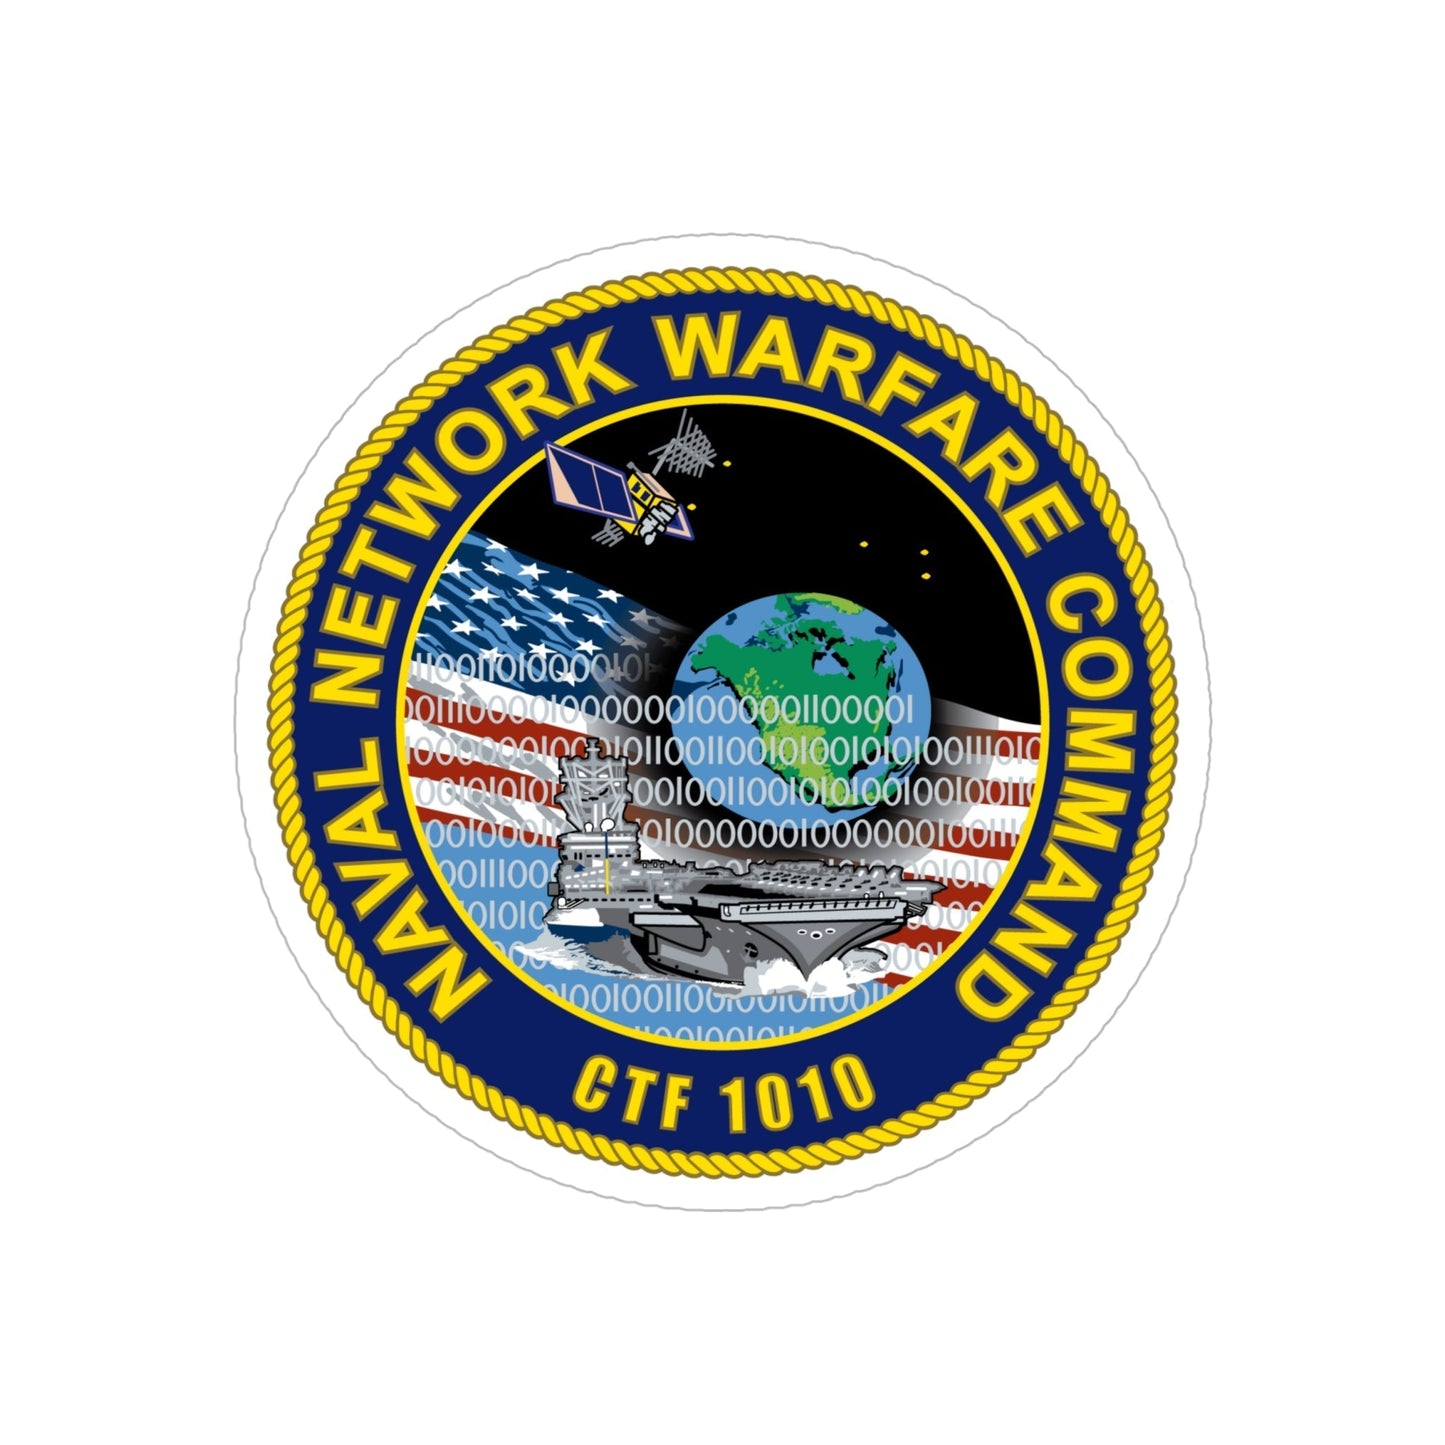 Naval Network Warfare Command CFT 1010 (U.S. Navy) Transparent STICKER Die-Cut Vinyl Decal-6 Inch-The Sticker Space